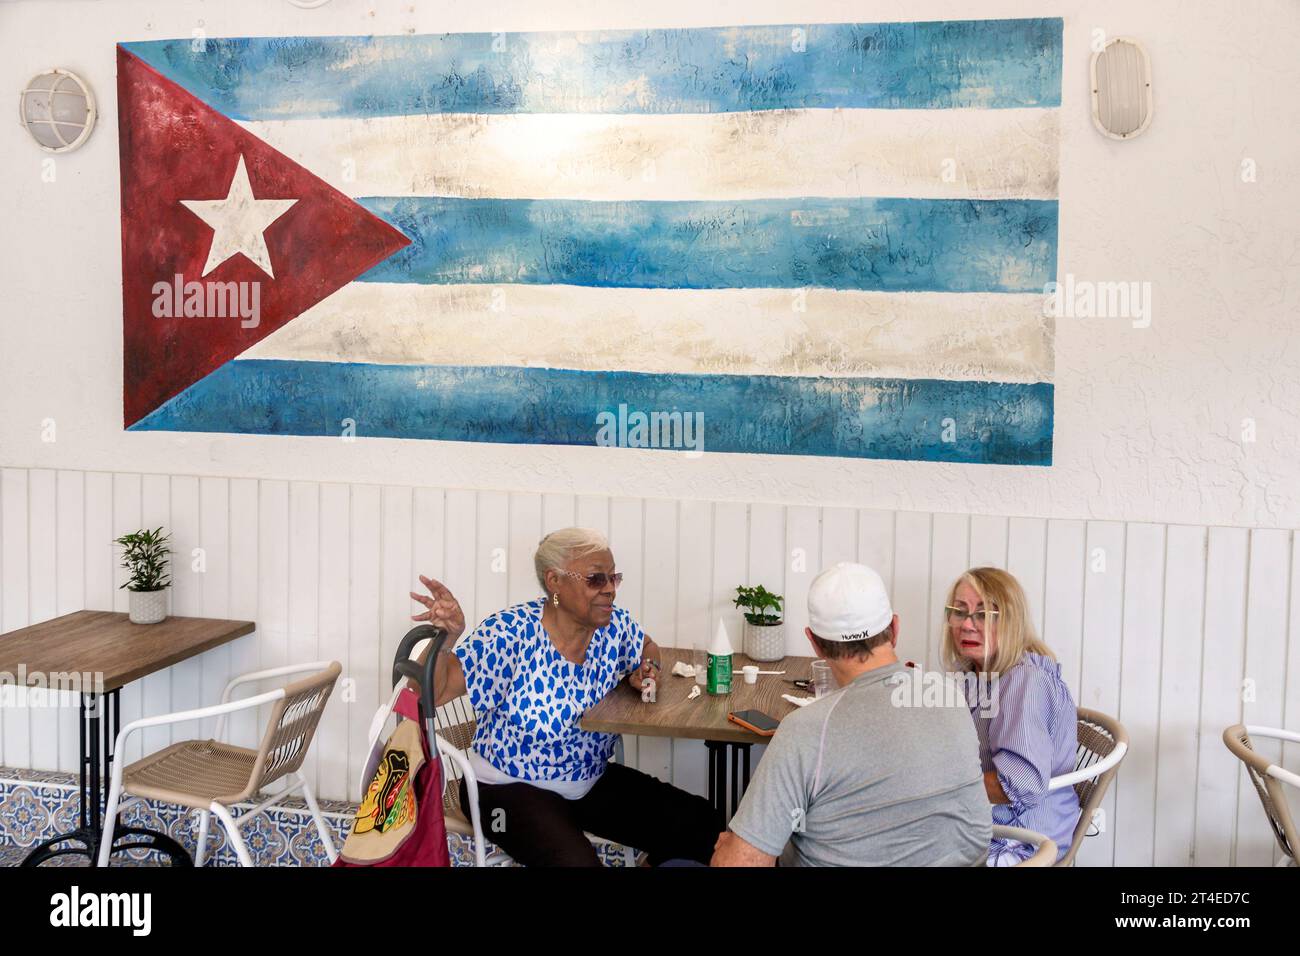 Miami Beach Floride, North Beach, café Sazon drapeau cubain, homme hommes hommes, femme femme femme femme femme, résidents adultes, retraités Banque D'Images